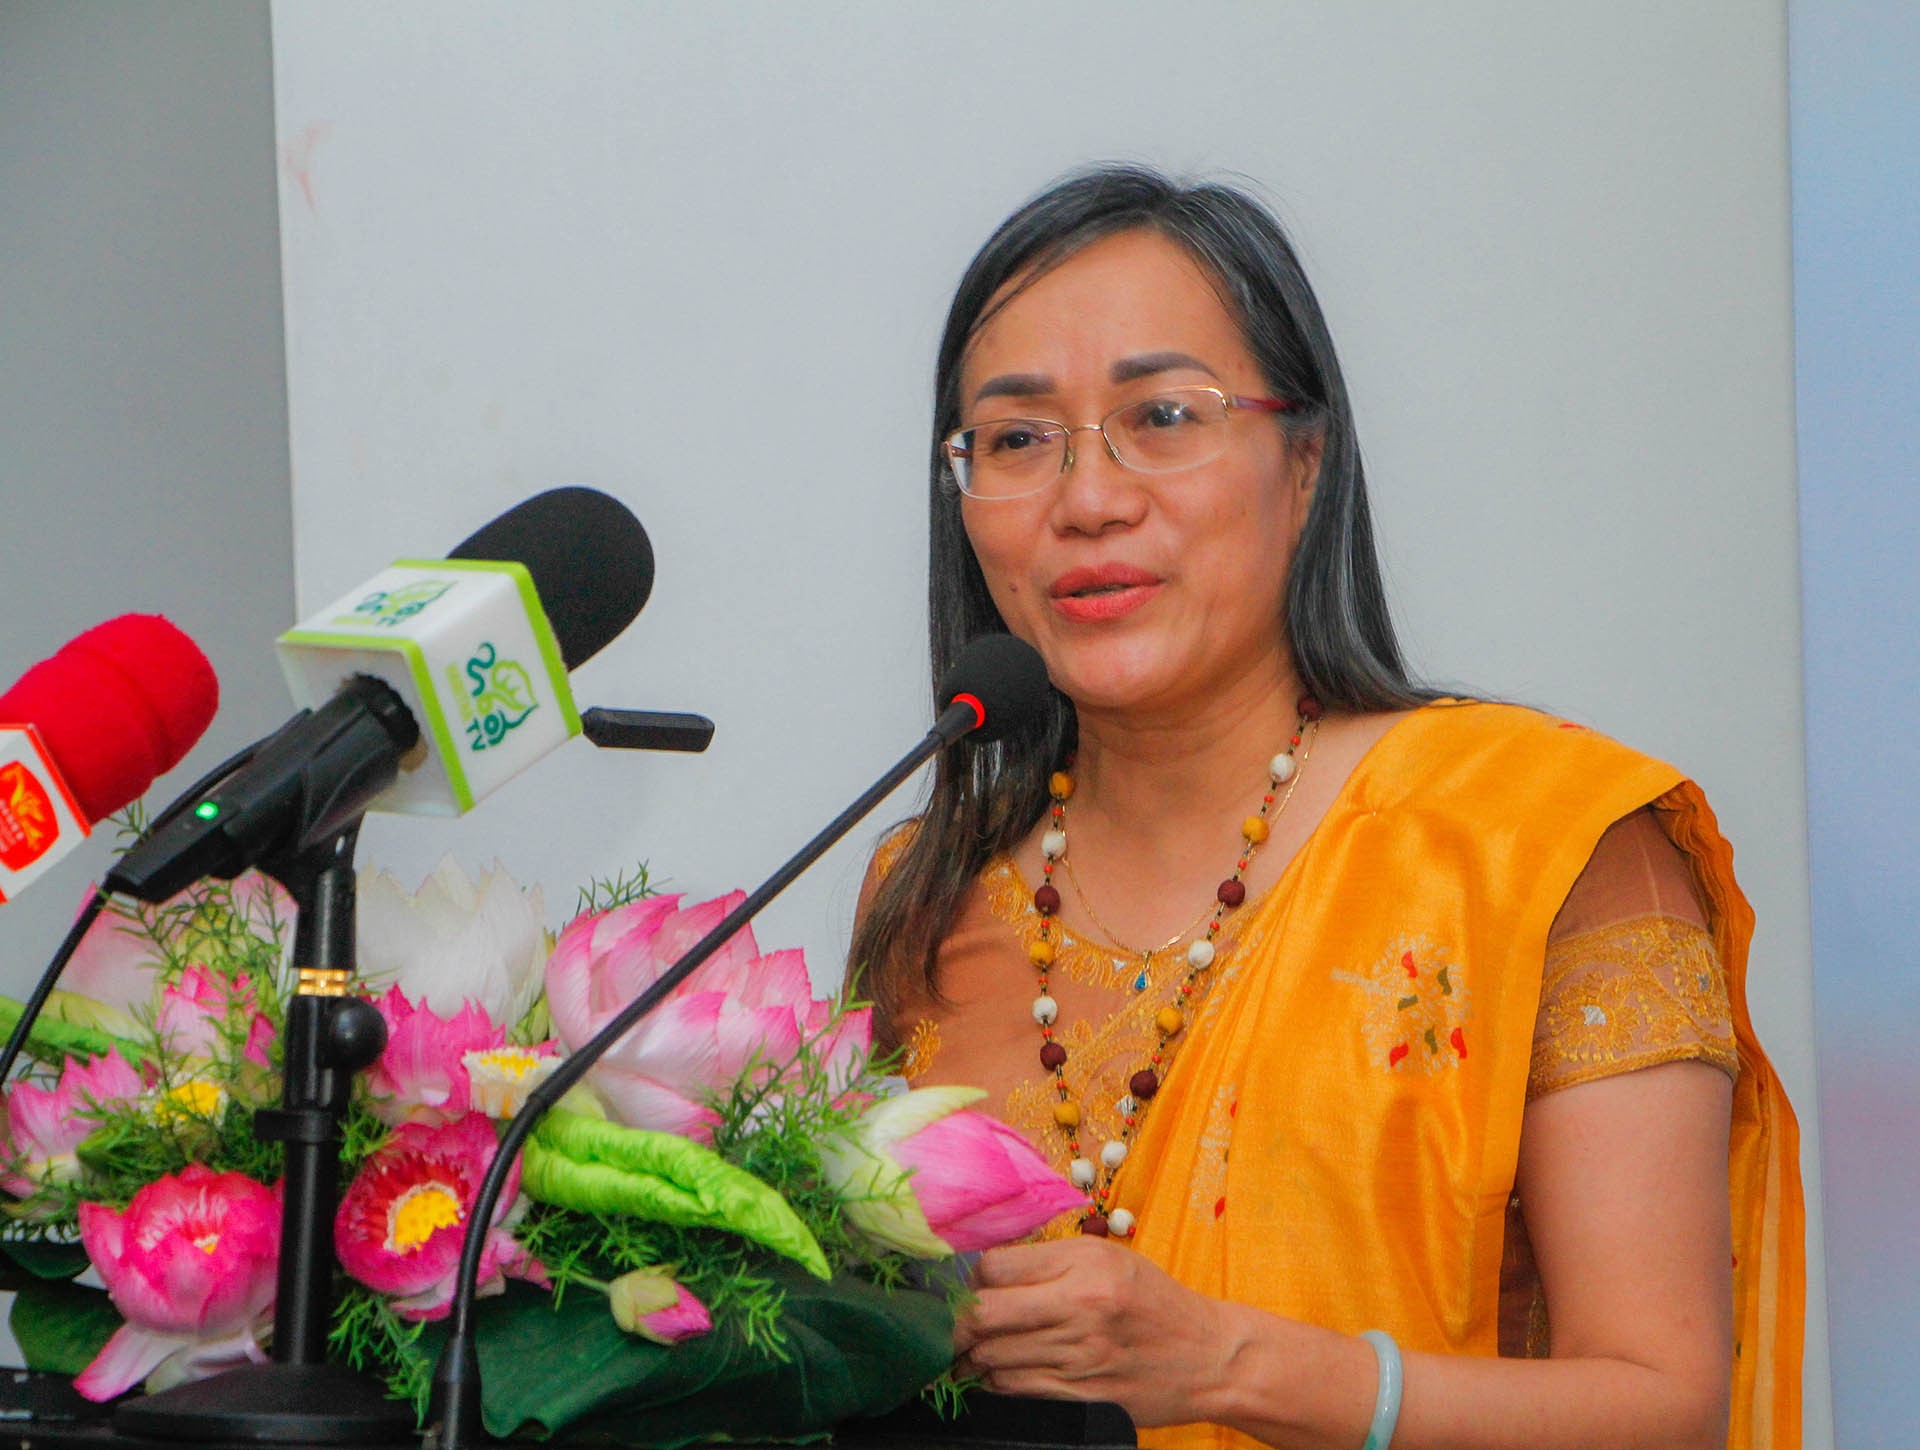 Đại sứ Hồ Thị Thanh Trúc phát biểu tại sự kiện.